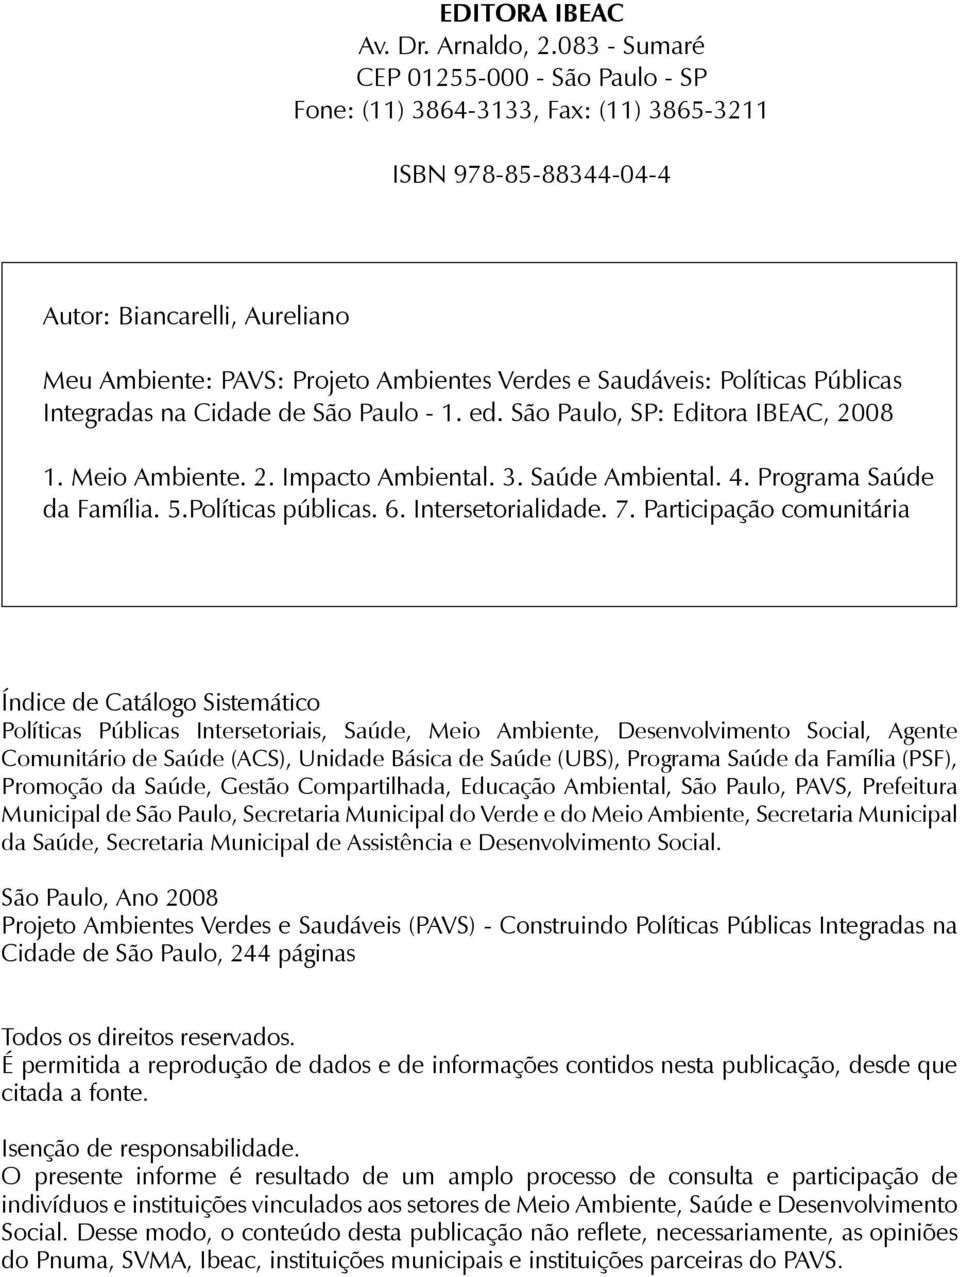 Políticas Públicas Integradas na Cidade de São Paulo - 1. ed. São Paulo, SP: Editora IBEAC, 2008 1. Meio Ambiente. 2. Impacto Ambiental. 3. Saúde Ambiental. 4. Programa Saúde da Família. 5.